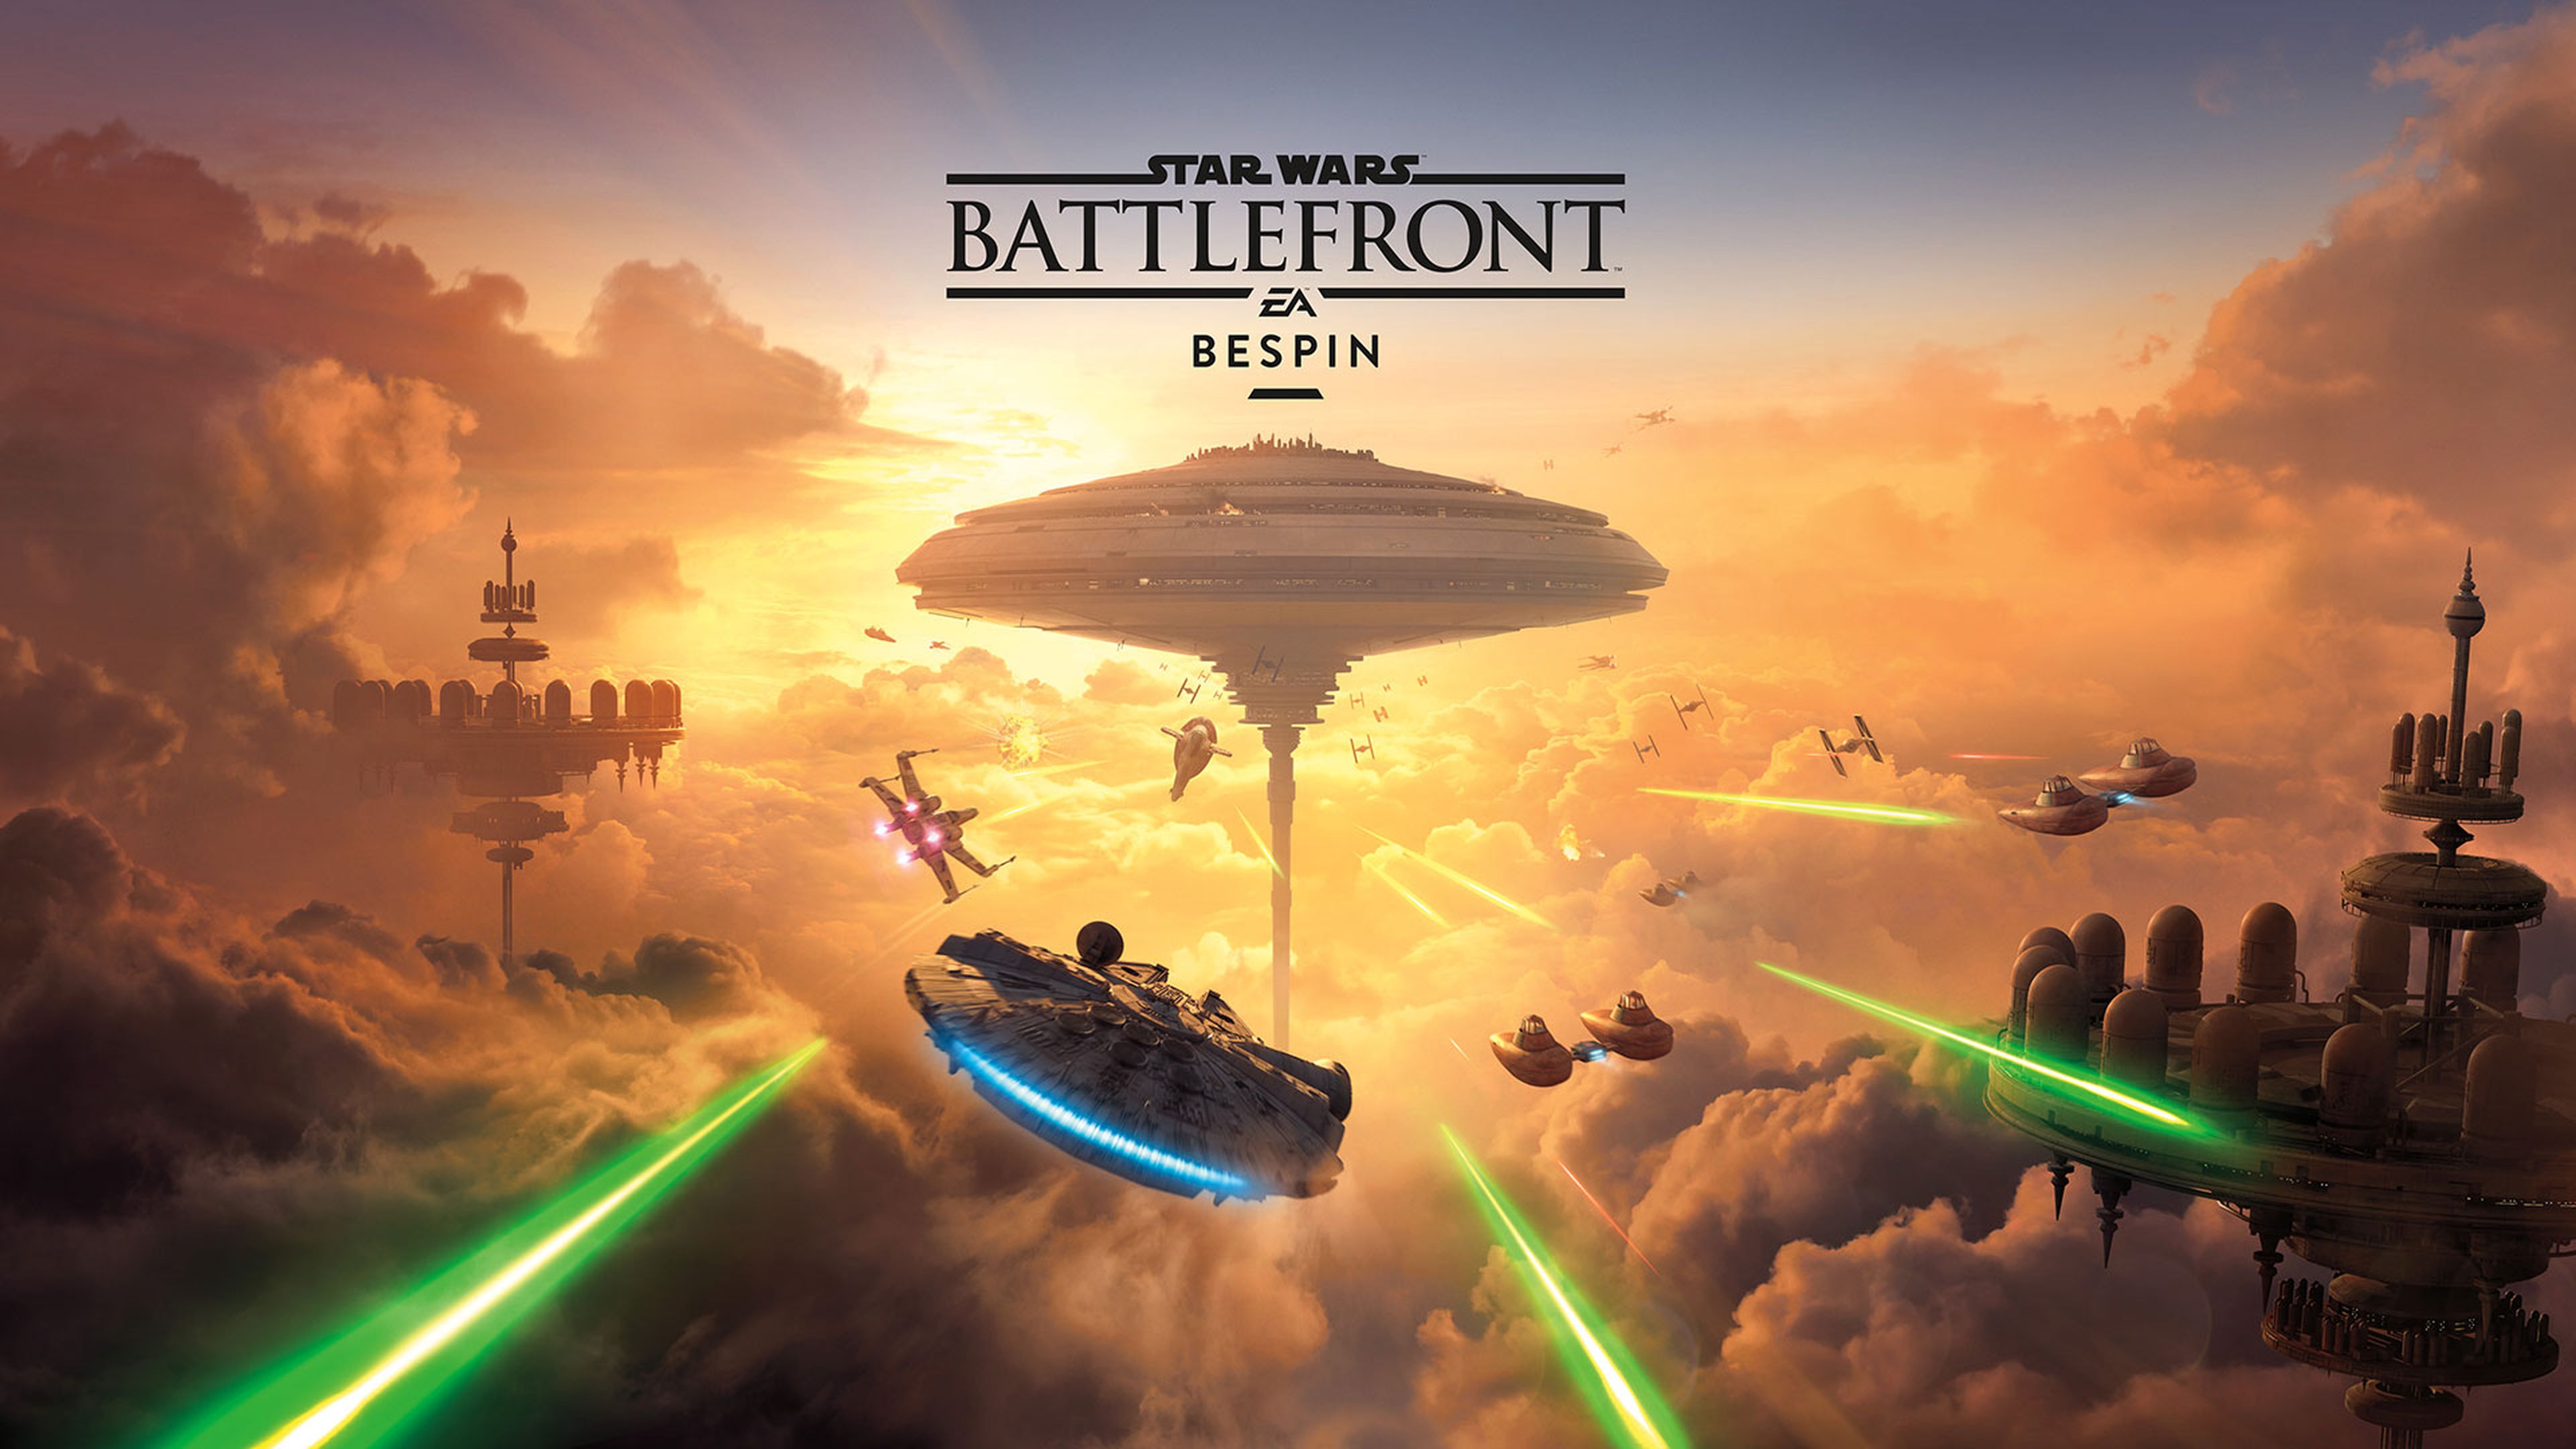 Star Wars Battlefront: Bespin - Imágenes y fecha de lanzamiento